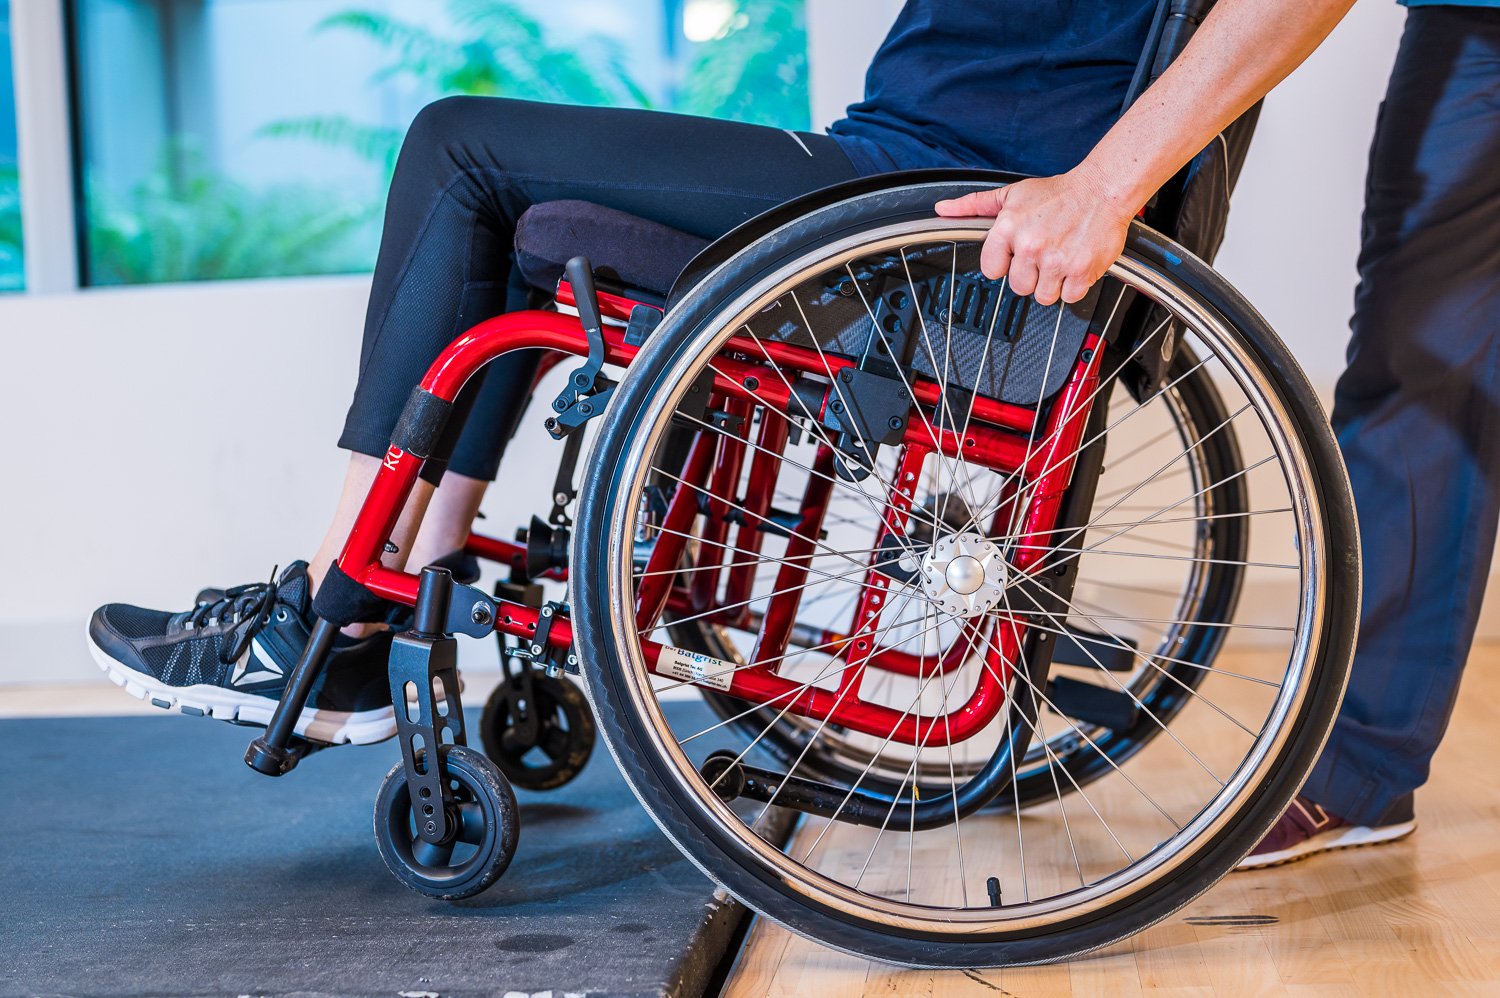 Nahaufnahme eines Rollstuhl mit einer Hand, die das Rollstuhlrad bedient.